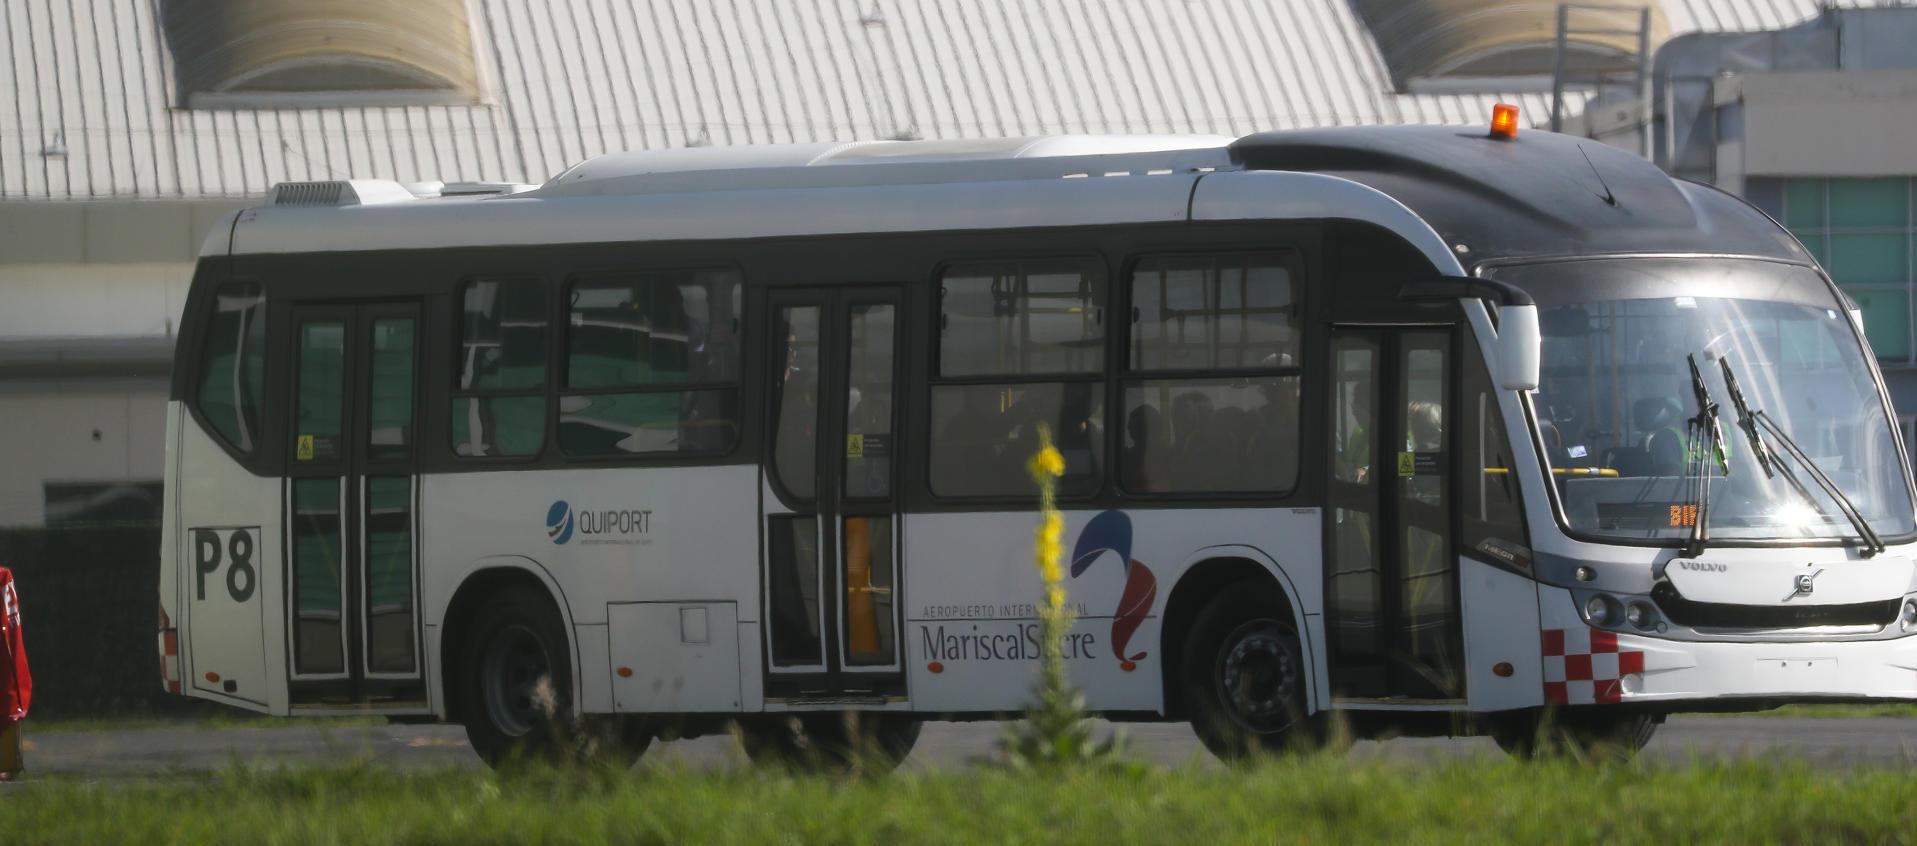 Fotografía del bus que lleva a funcionarios de la Embajada de México en Ecuador hacia el avión en el que retornarán a su país.